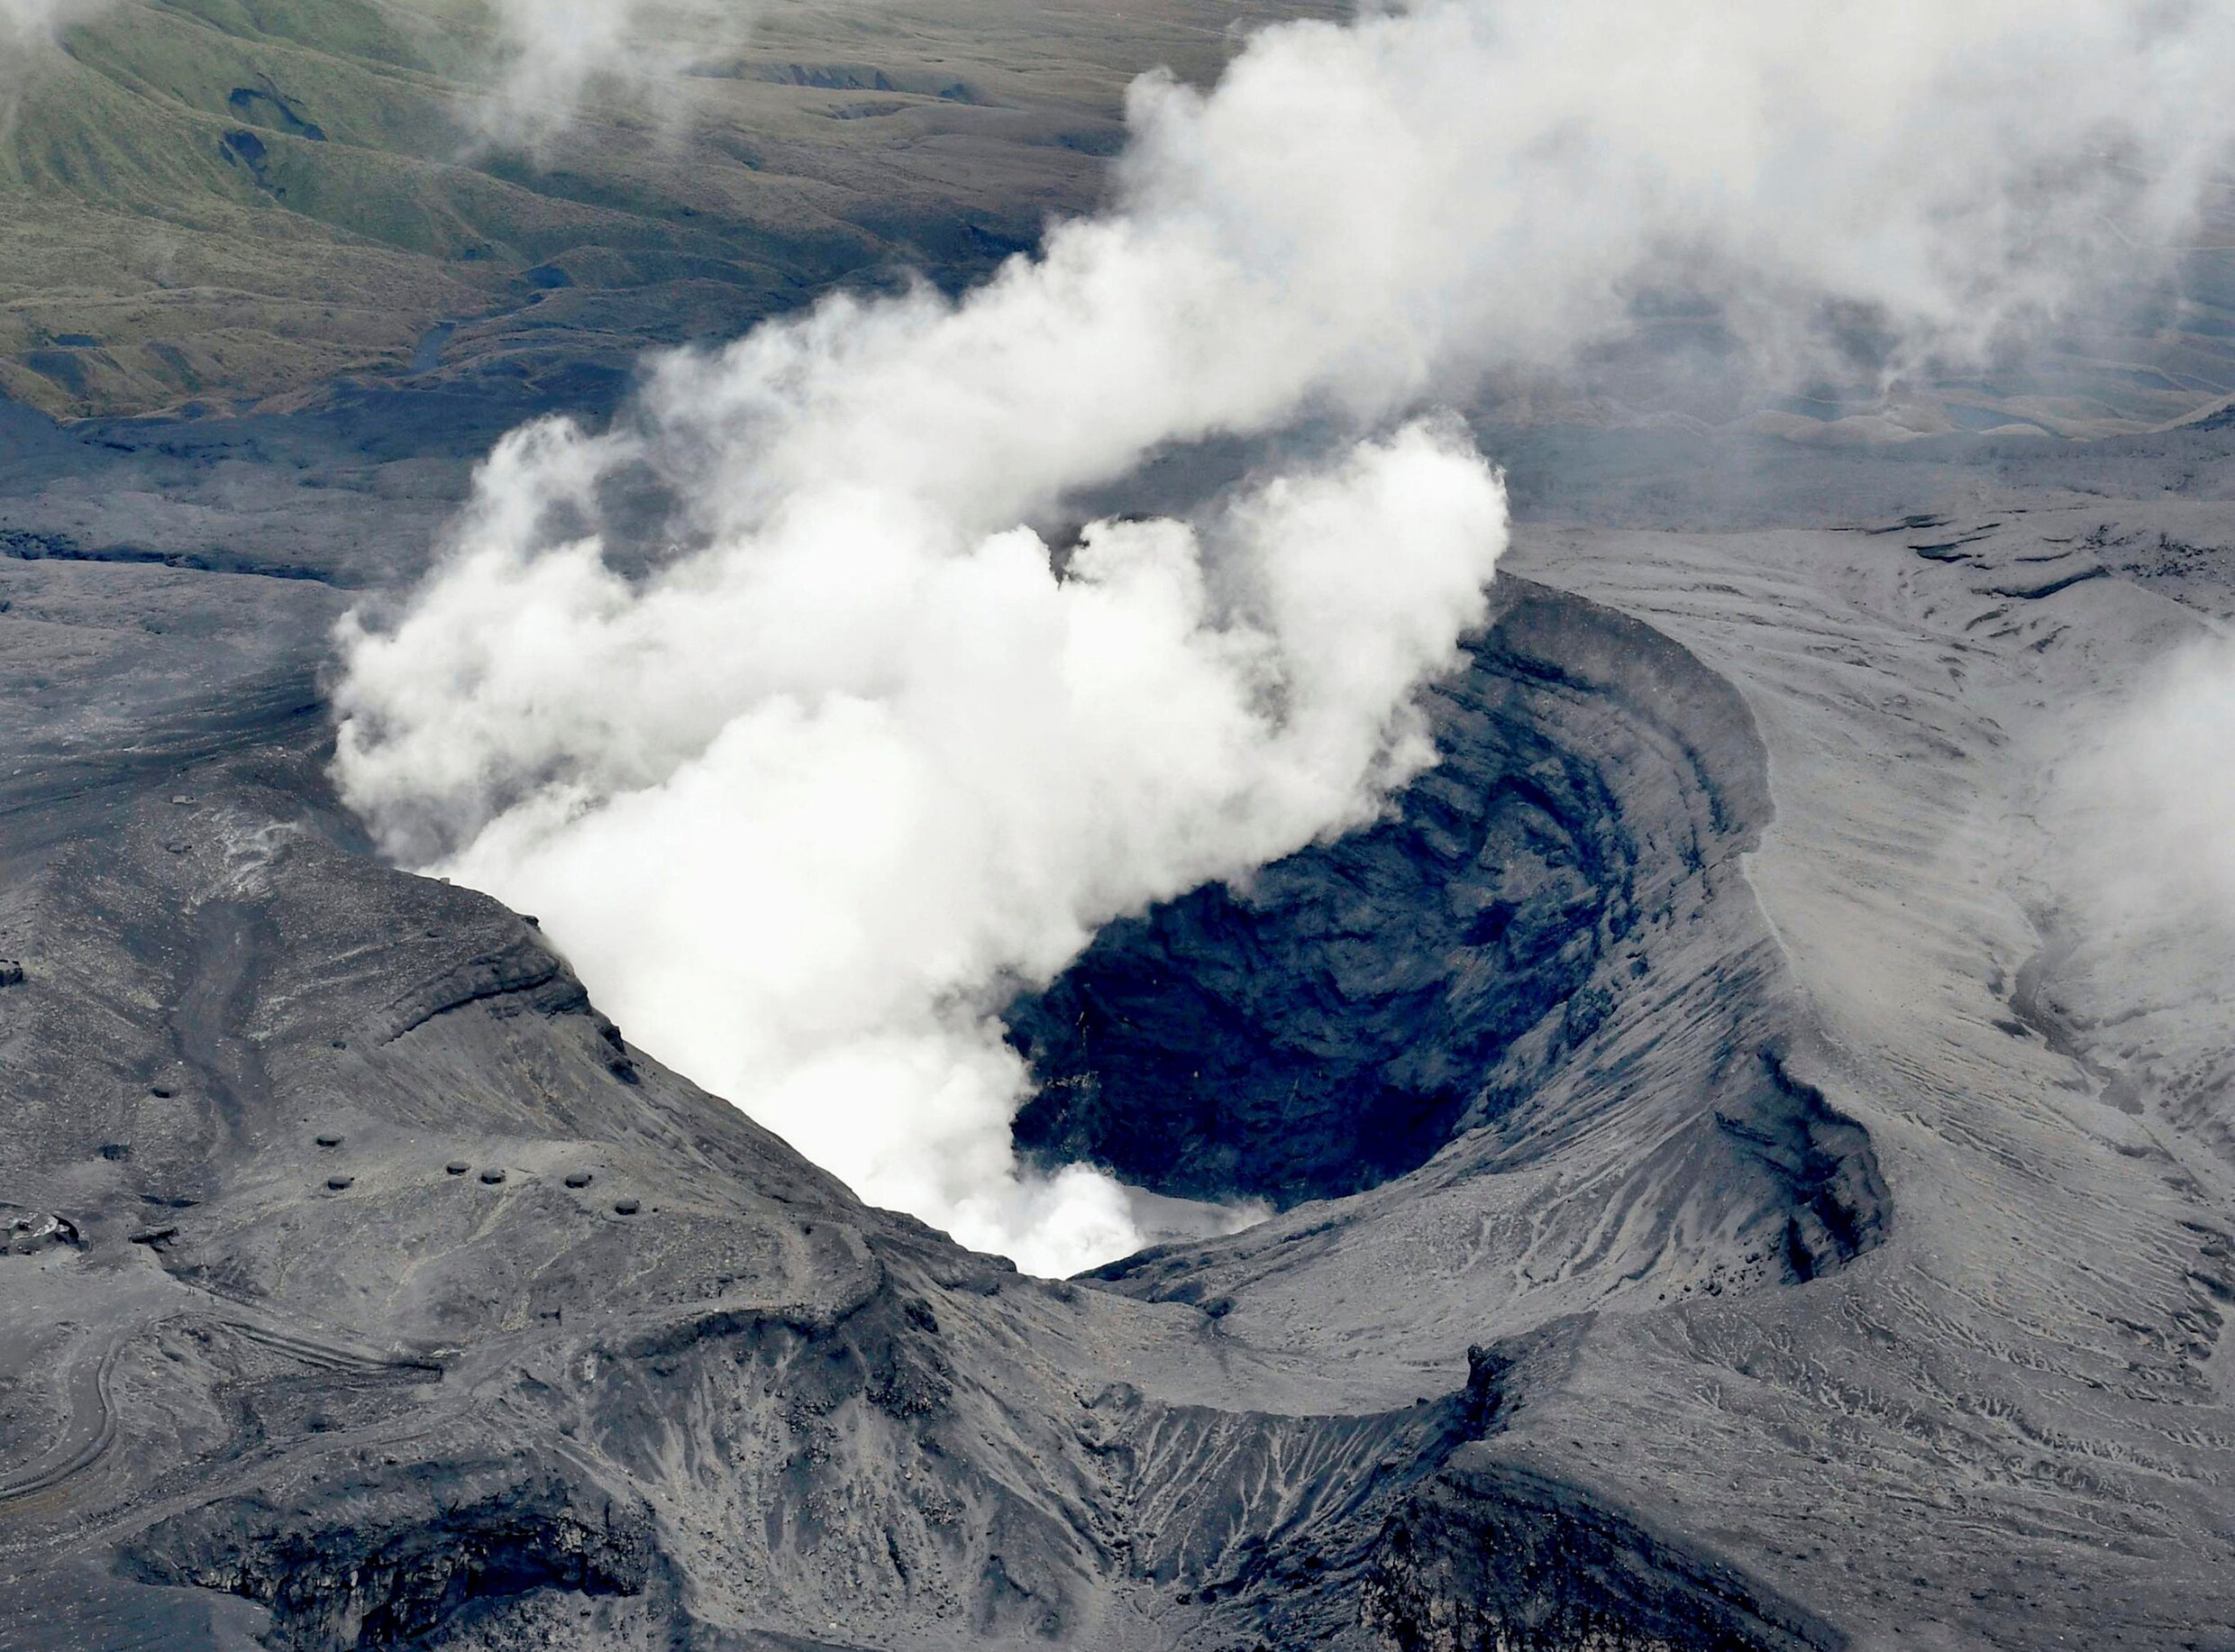 Regering Japan waarschuwt omwonenden na uitbarsting vulkaan Aso